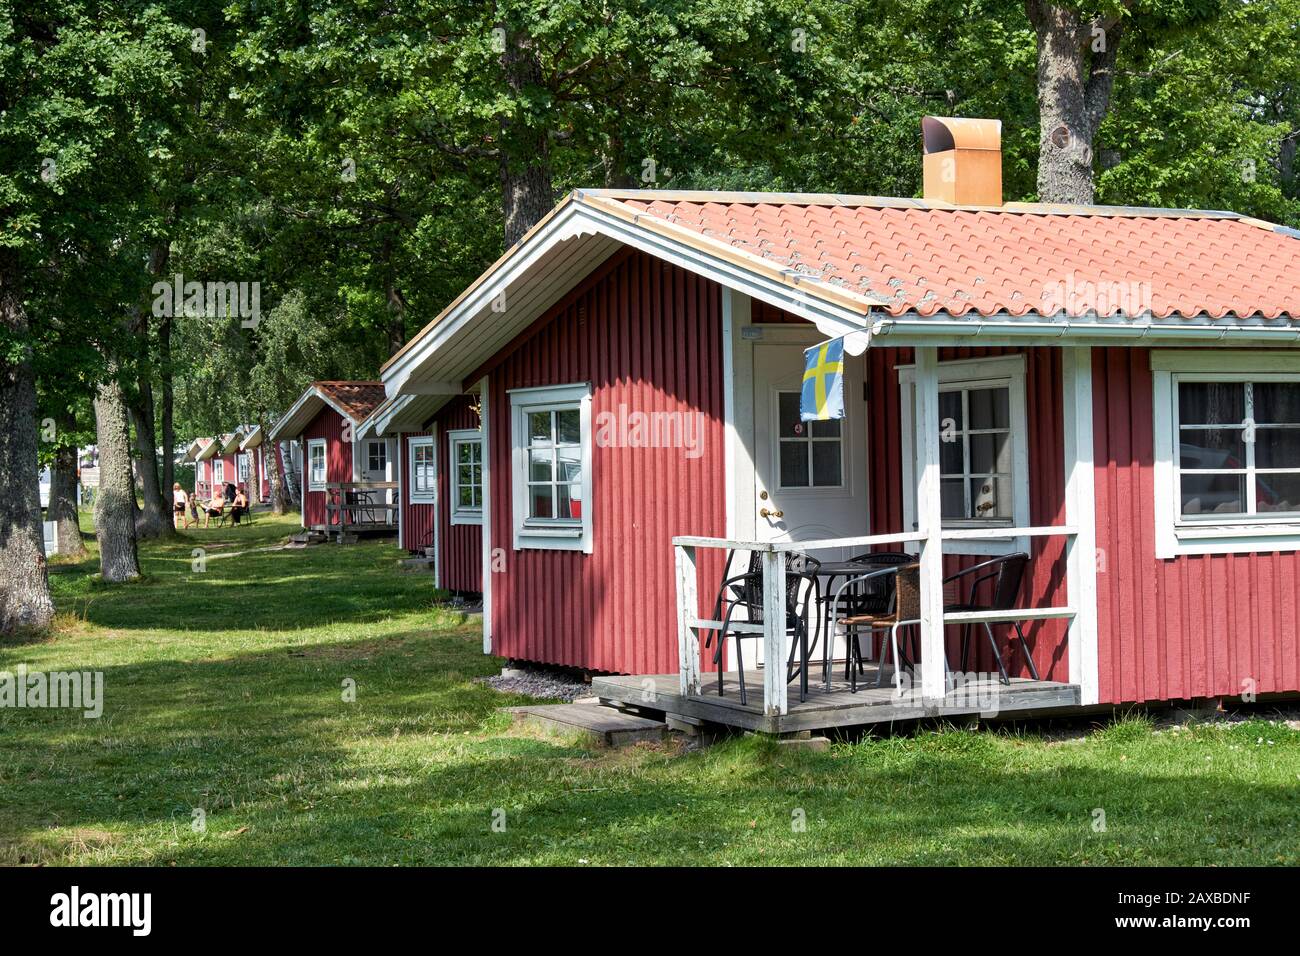 Une rangée de cottages de vacances en bois suédois peints en rouge et blanc avec des porches connus localement sous le nom de 'tuga's' Banque D'Images